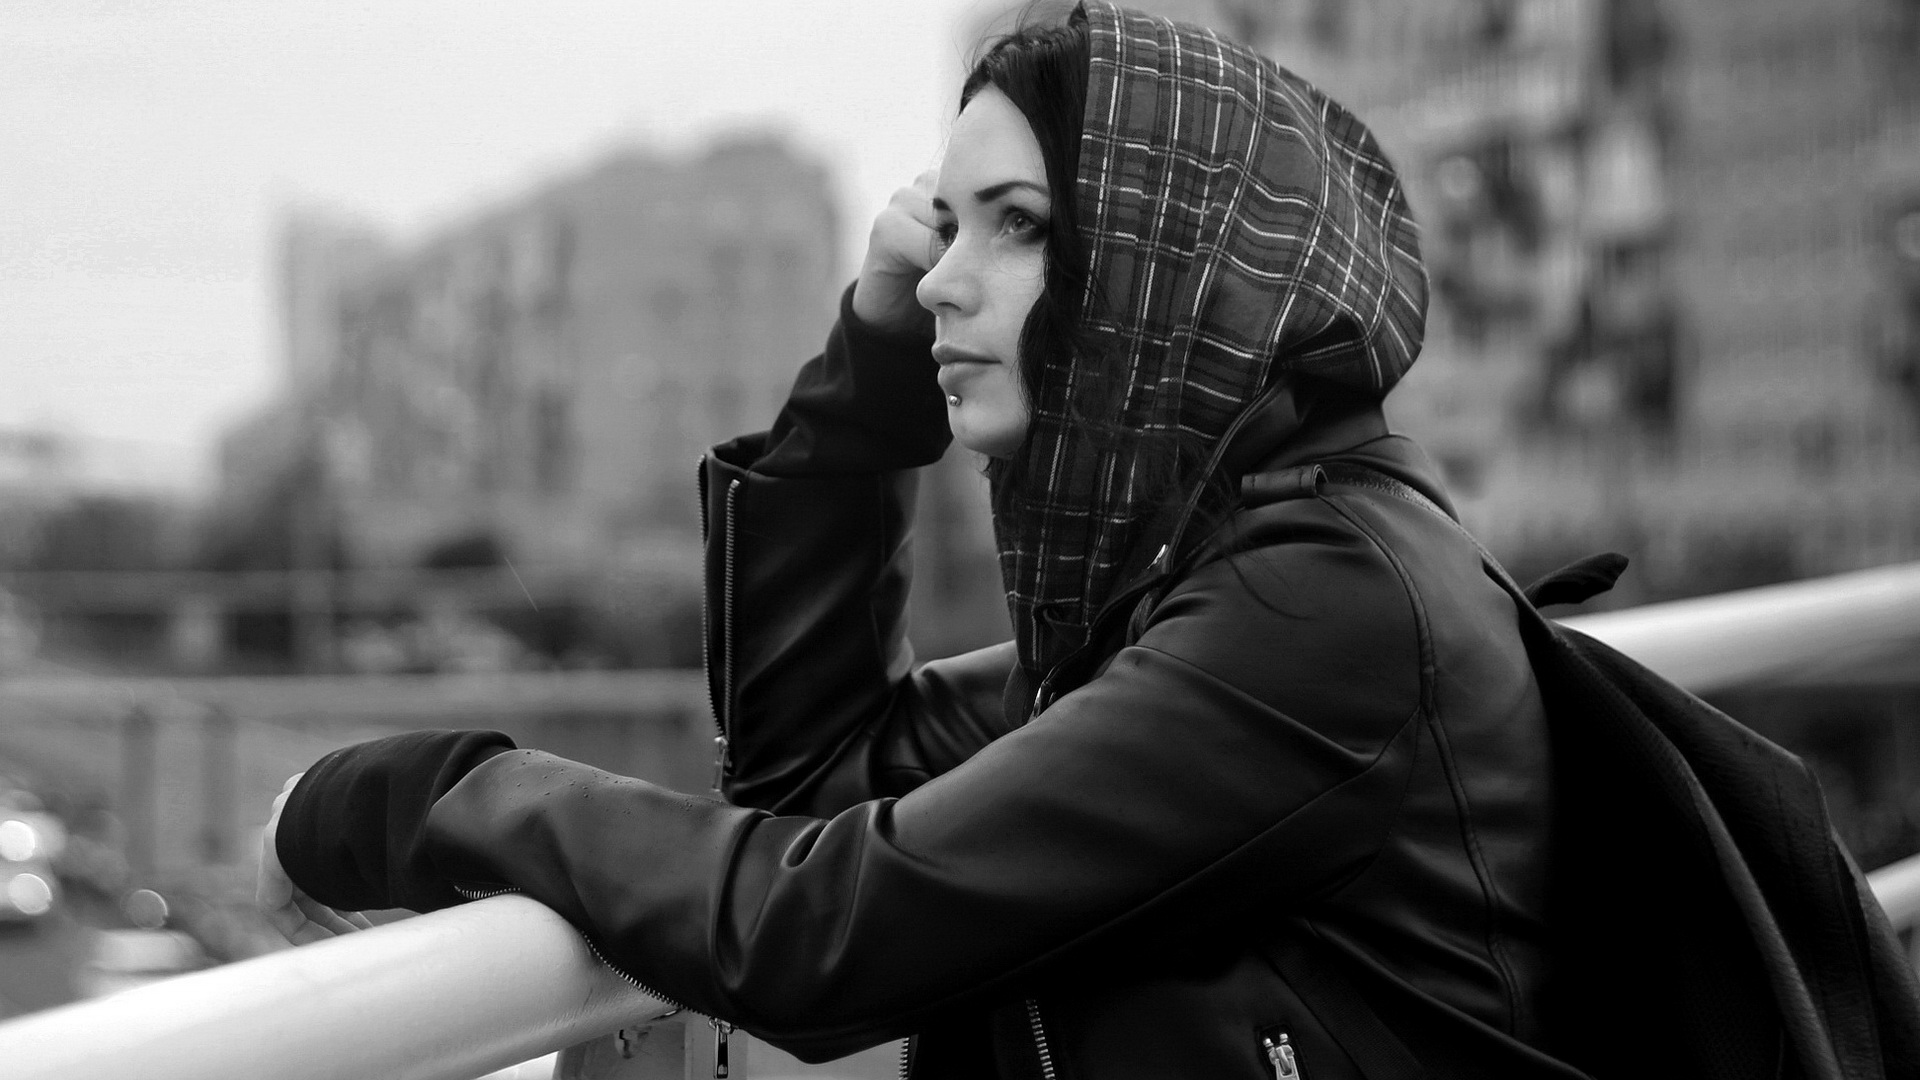 Катерина Баумгертнер в городе под дождем черно-белое фото